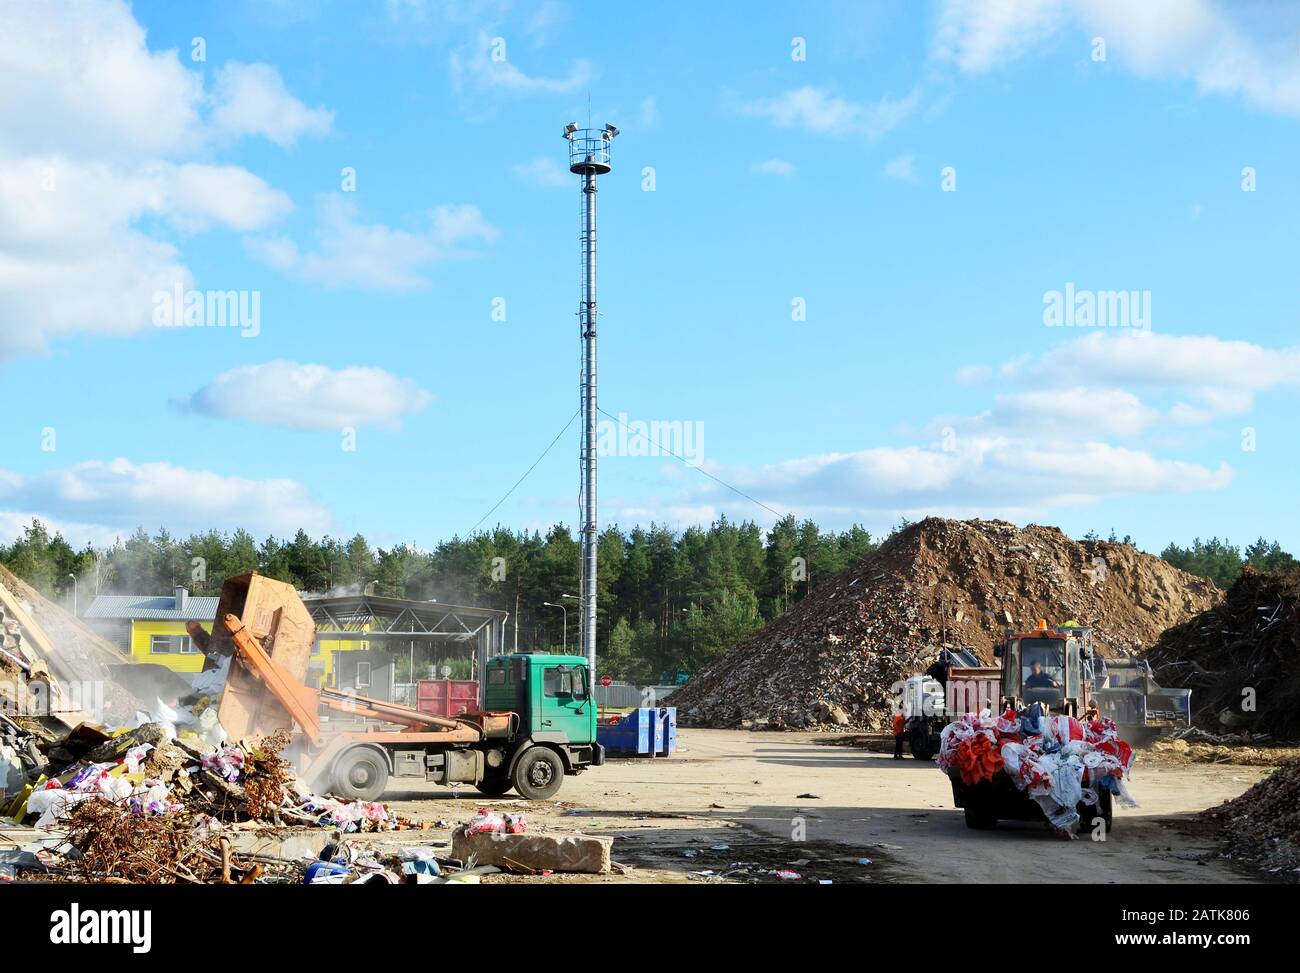 Le déchargement des camions à ordures déchets de construction contenant à la décharge. Usine de traitement de traitement de déchets industriels. Le recyclage des déchets et de béton Banque D'Images